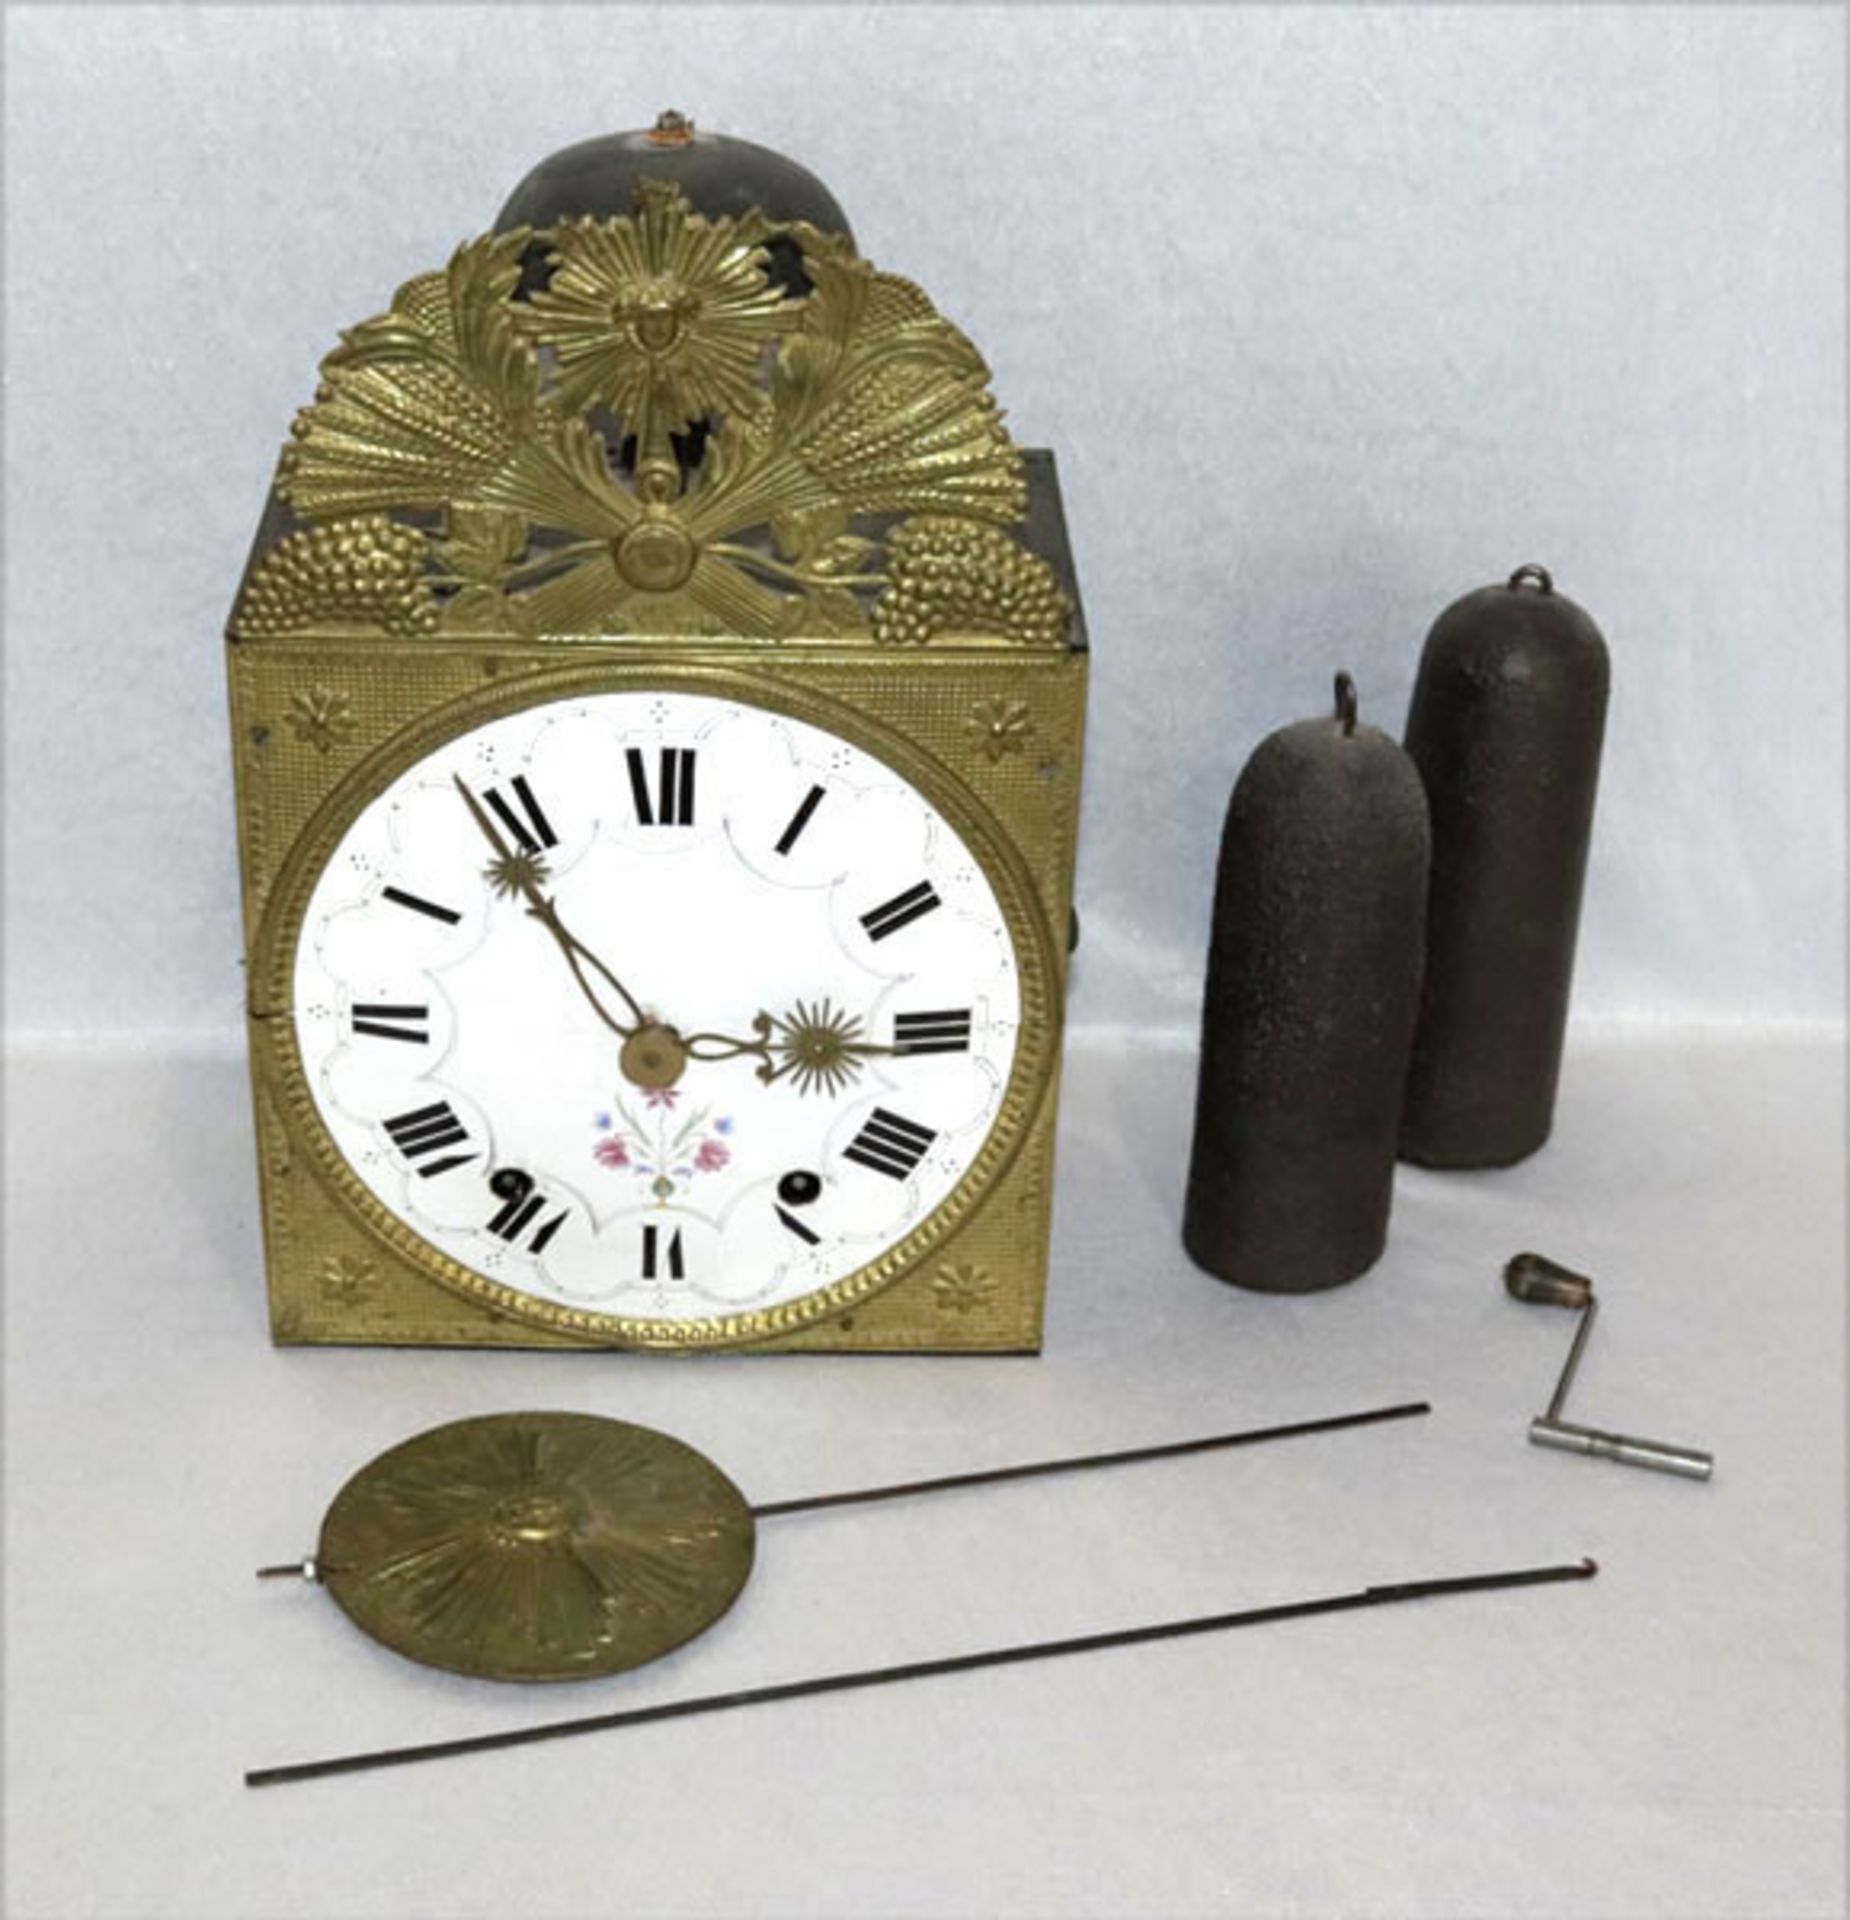 Comptoise Uhr mit geprägtem Messing und Email Zifferblatt, 2 Gewichte, Pendel und Wandhalterung, H